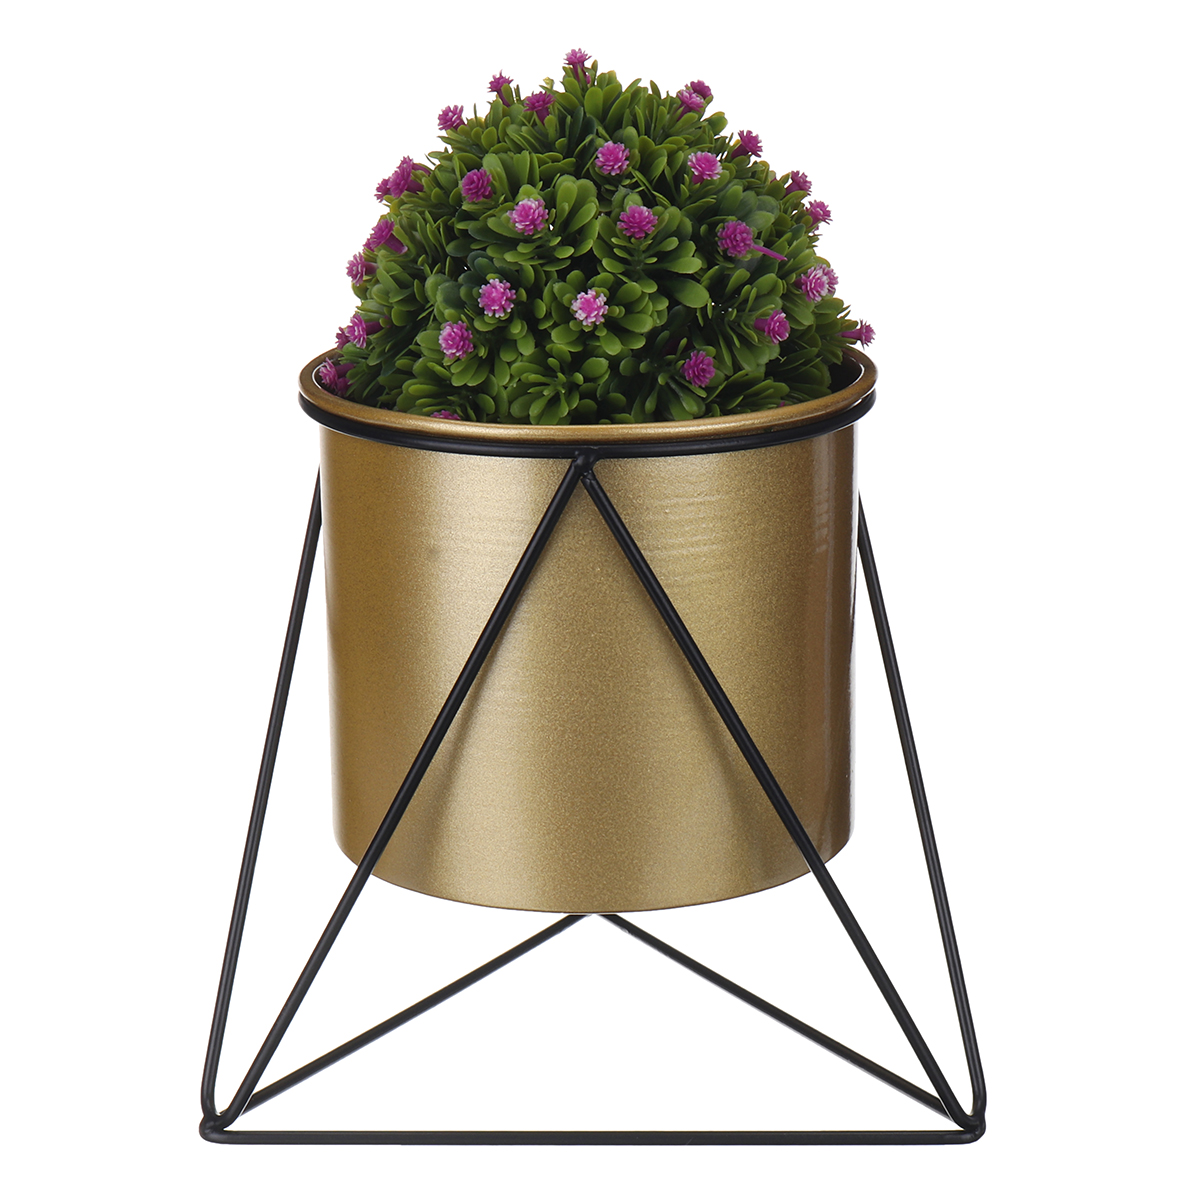 Metal-Flower-Pot-Stand-Indoor-Outdoor-Garden-Balcony-Desktop-Plant-Rack-Iron-Flower-Pot-Shelf-Home-O-1787537-12